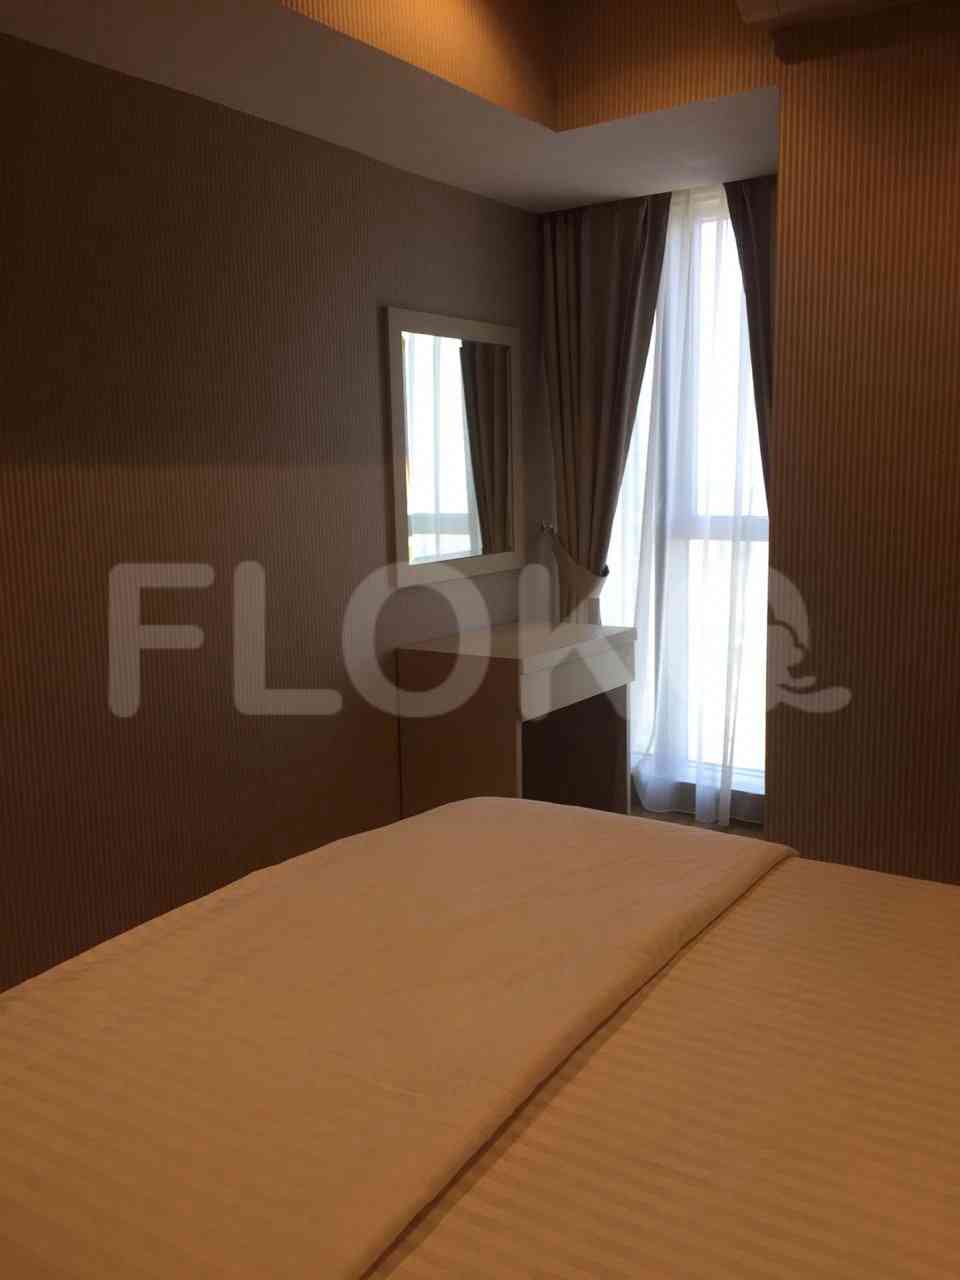 1 Bedroom on 17th Floor for Rent in Branz BSD - fbs9d0 3